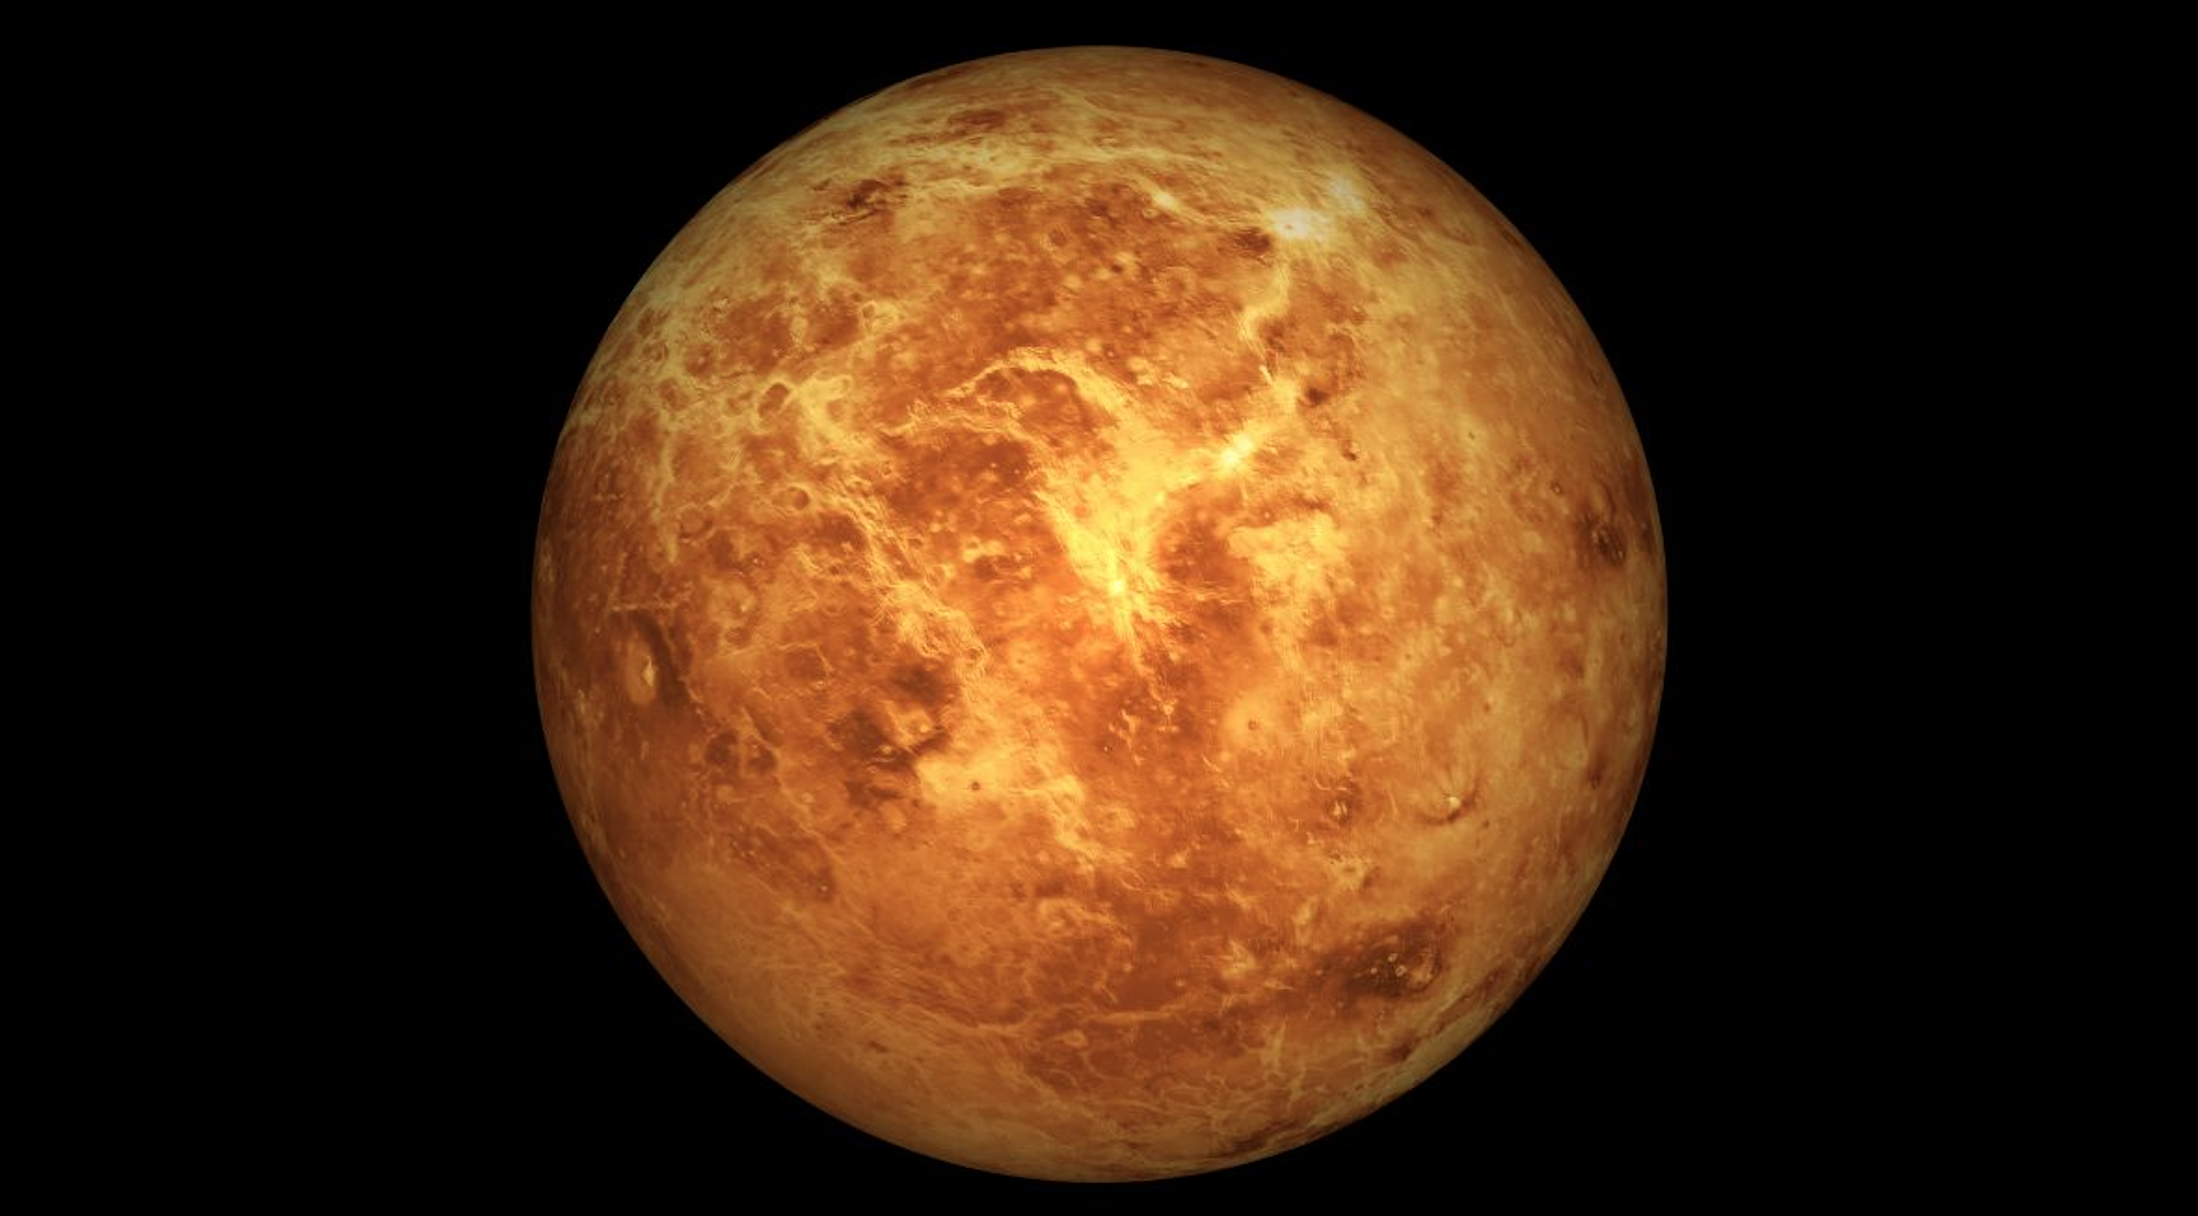 【税金のぼったくり】NASAが存在しない金星を探査すると発表